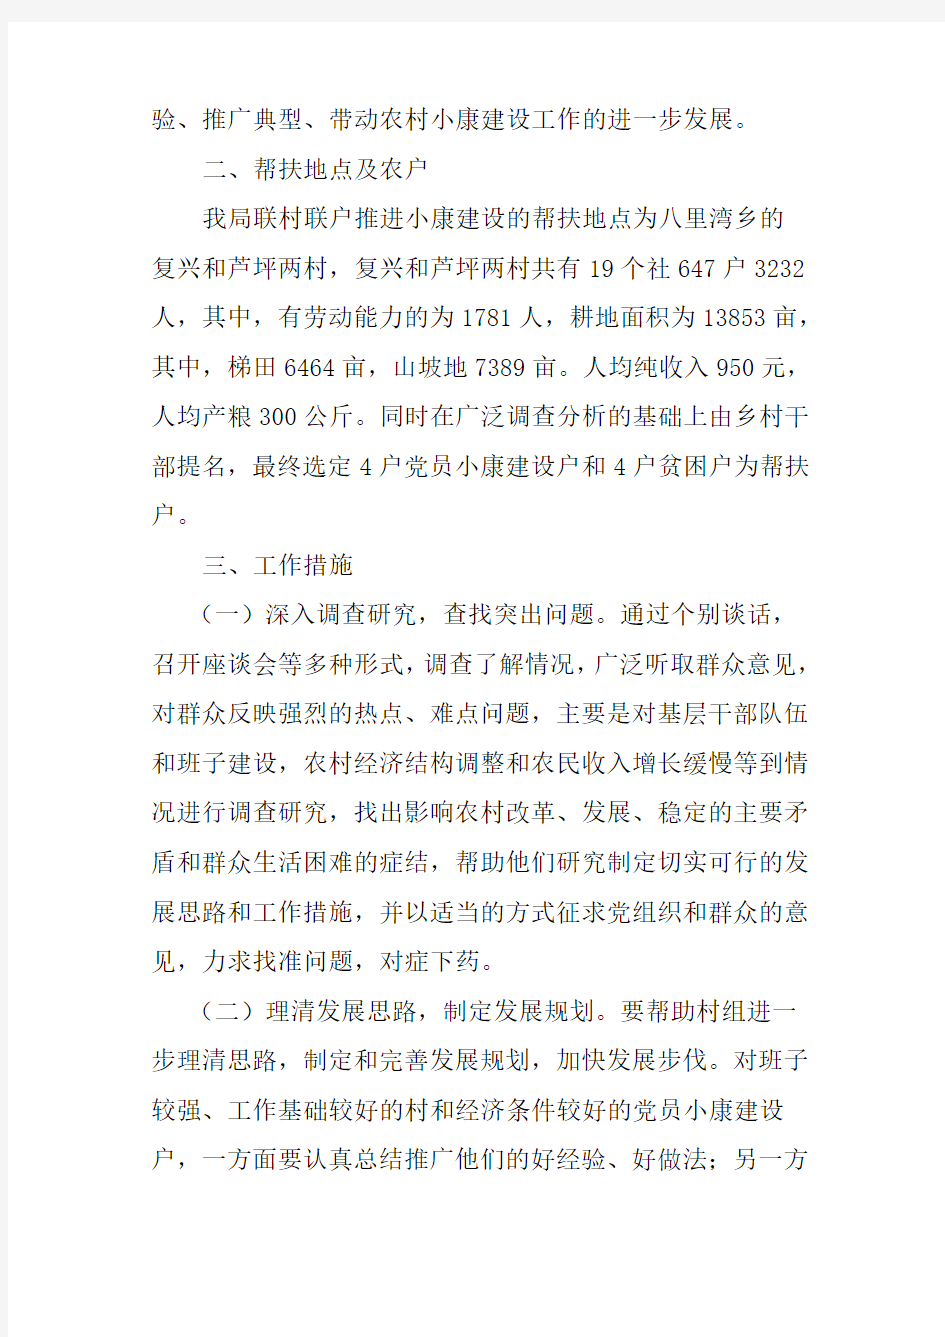 会宁县农牧局领导干部落实联村联户帮扶计划20040301